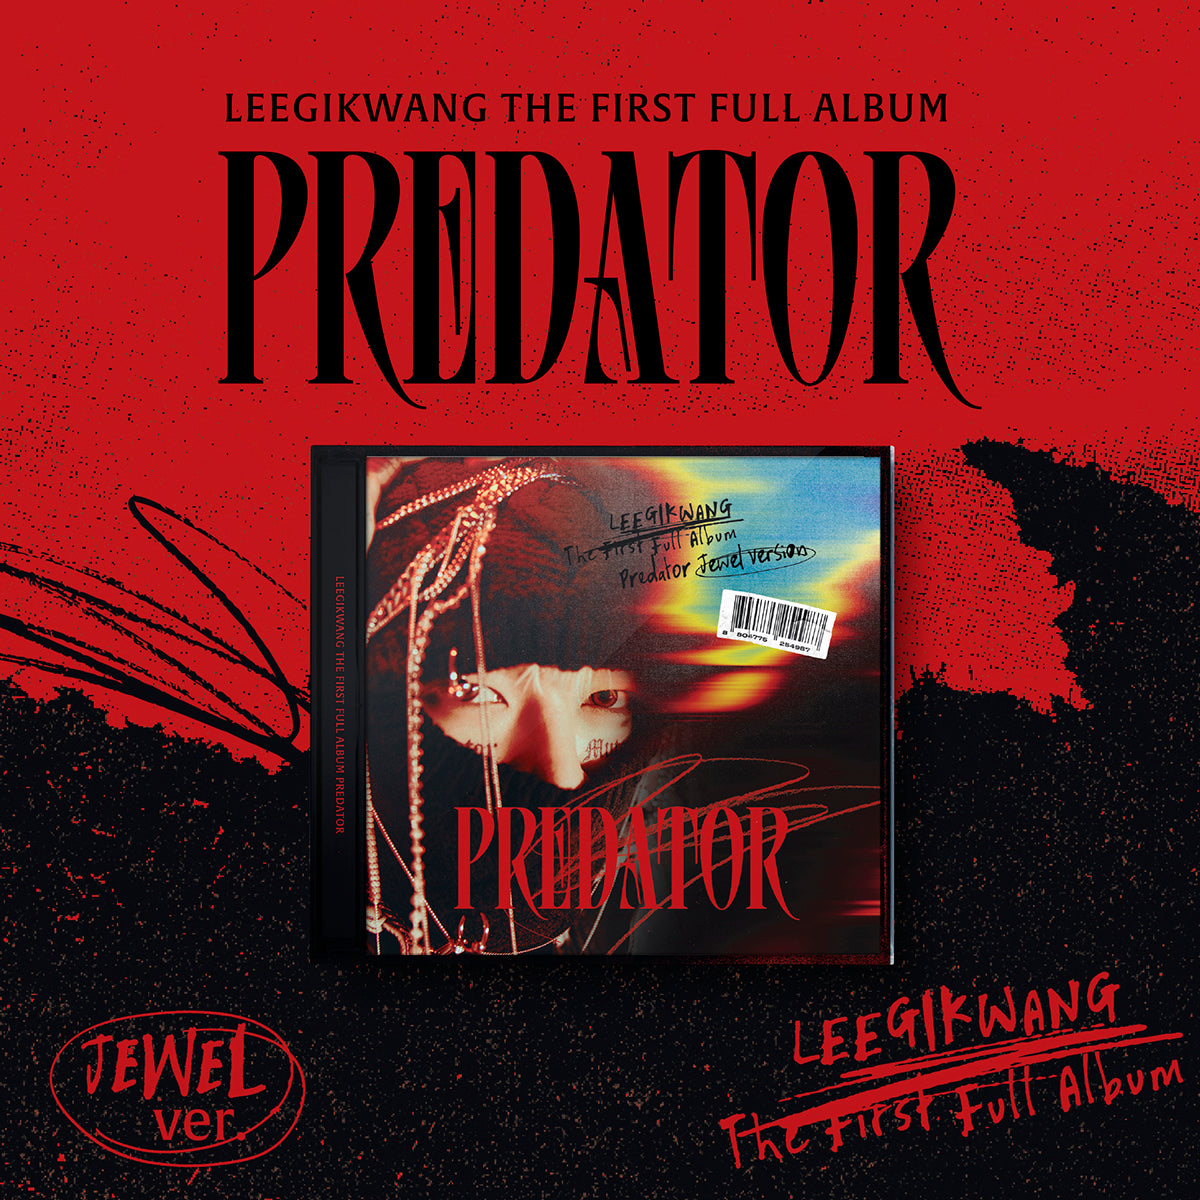 LEE GI KWANG (Highlight) - Predator (JEWEL ver.)